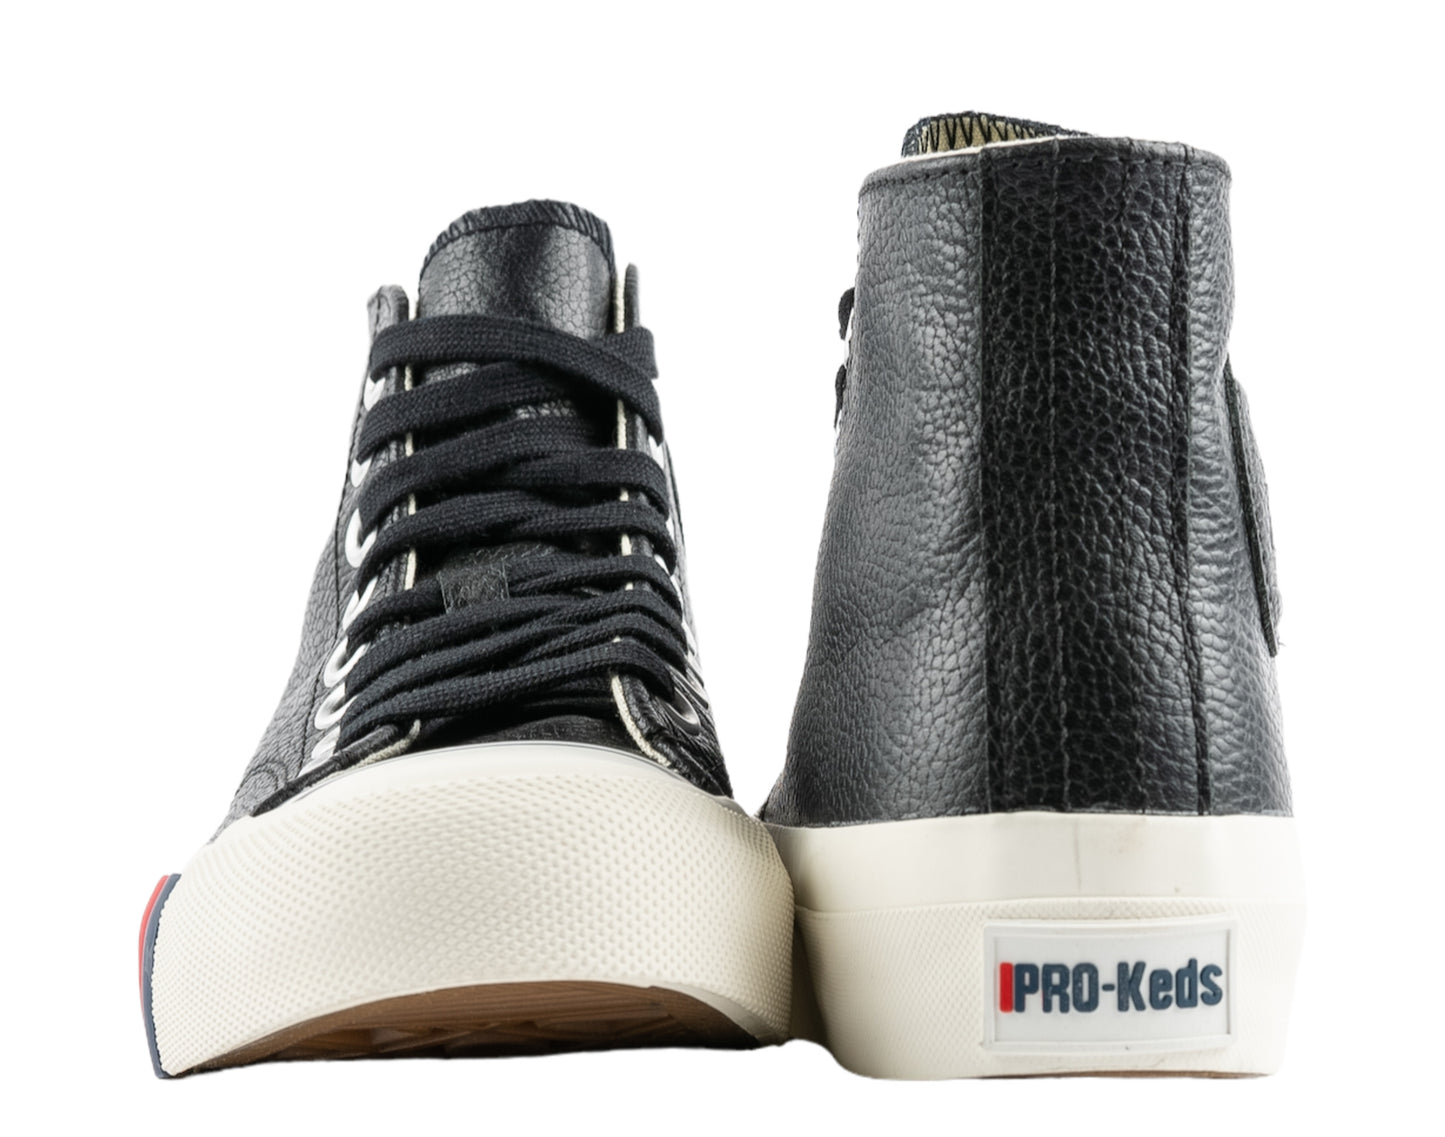 Pro-Keds Royal Hi Leather Unisex Shoes